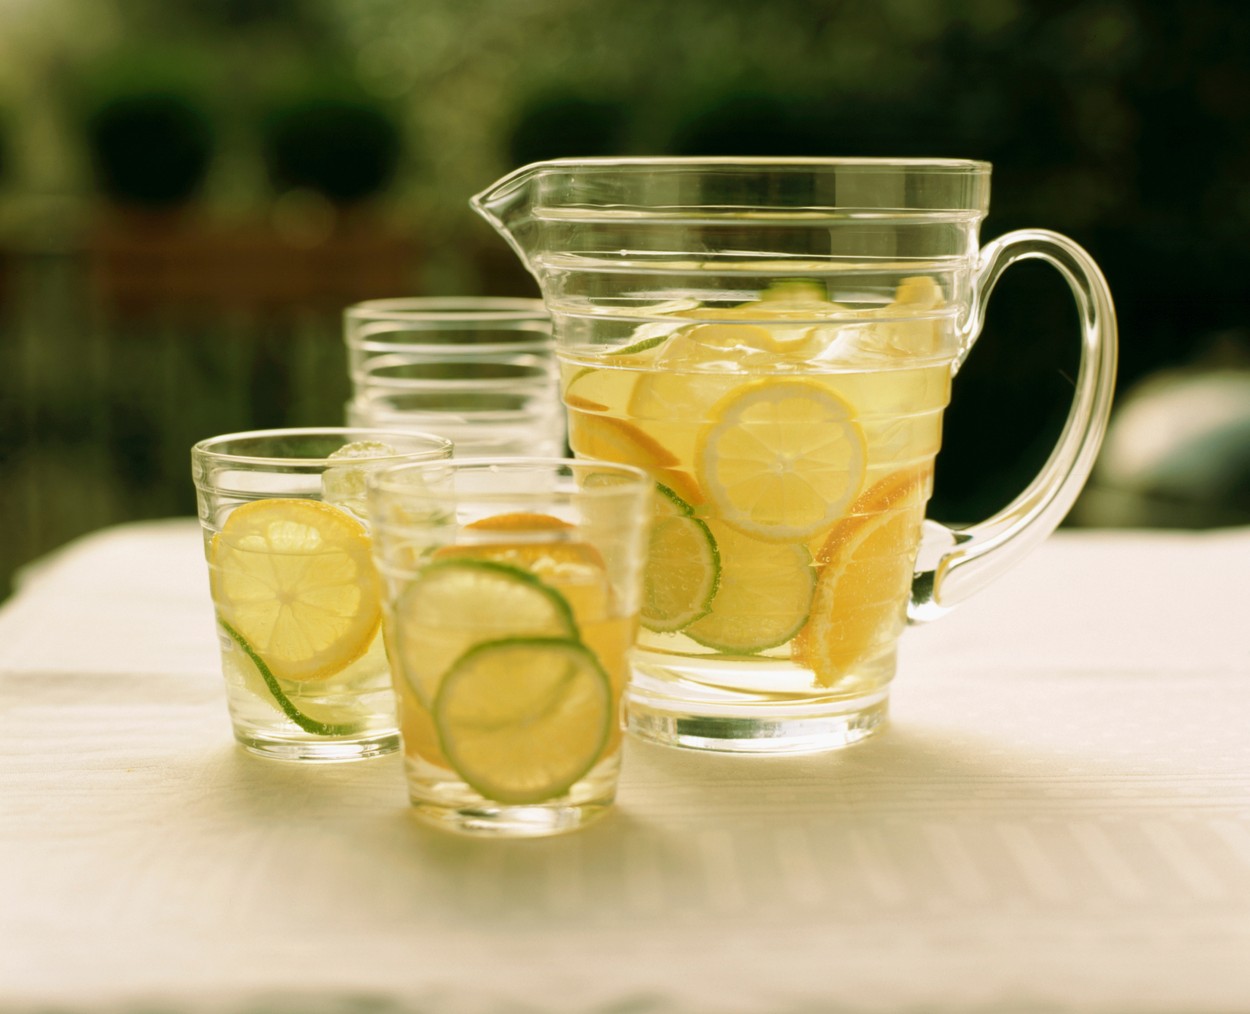 Limun dijeta: Skida kilograme, ali može da uništi zdravlje